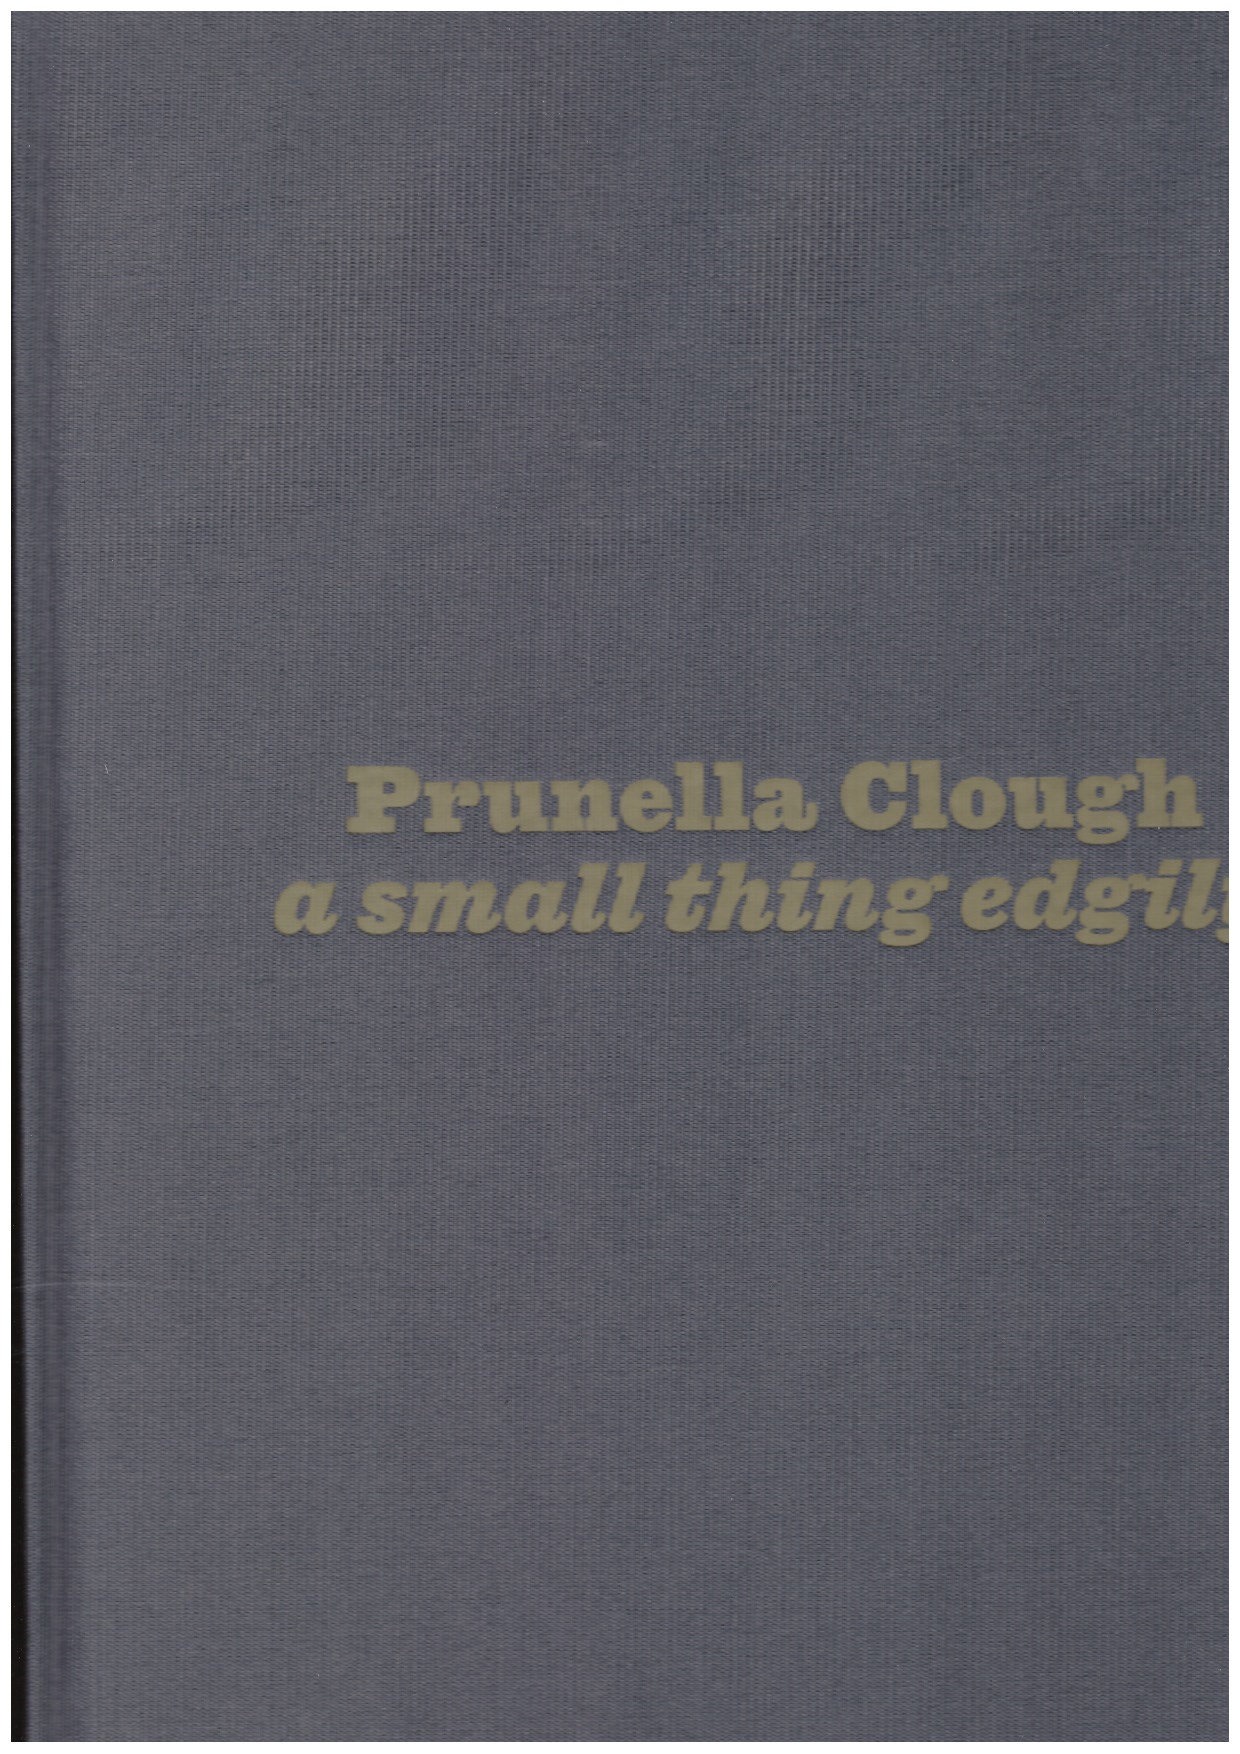 CLOUGH, Prunella; McHUGH, Camila (ed.) - Prunella Clough: A small thing edgily